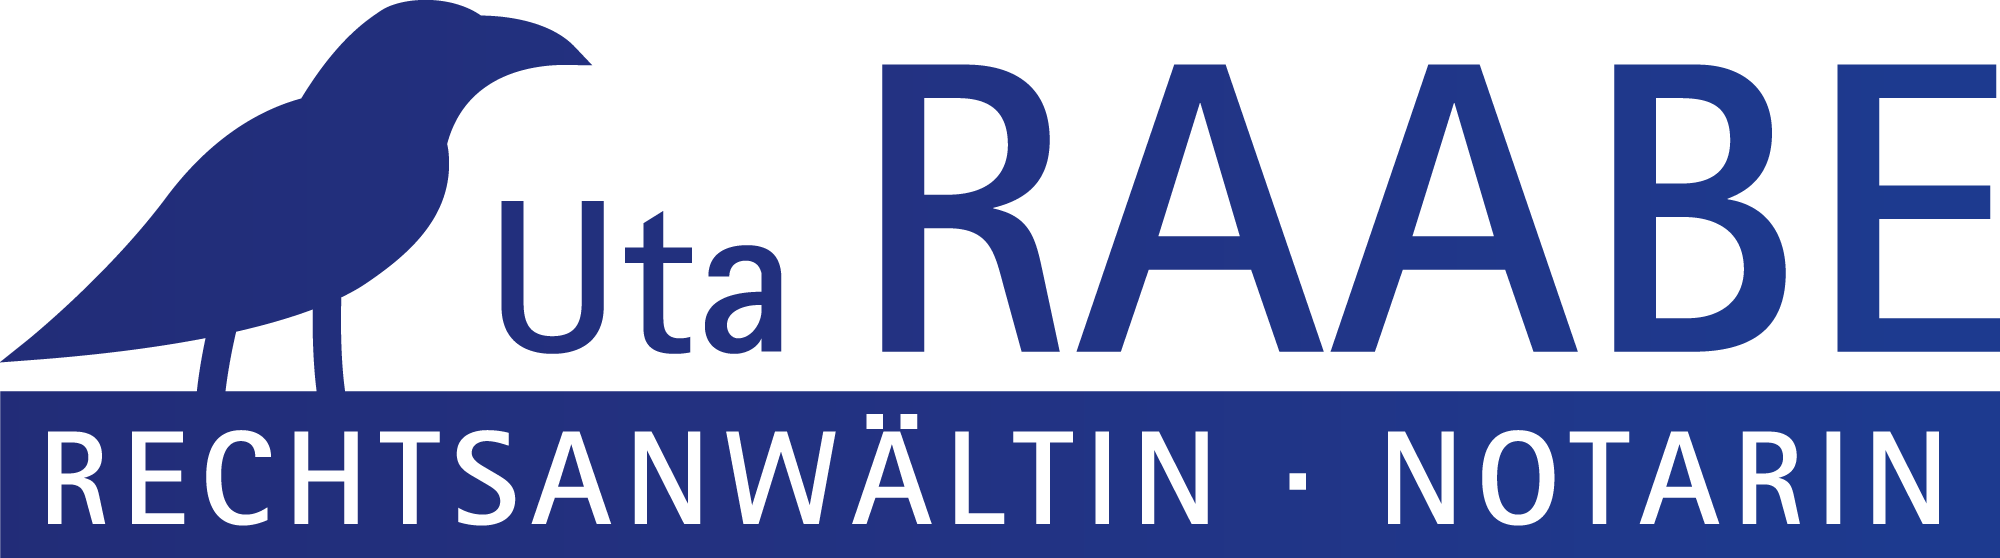 Raabe_logo